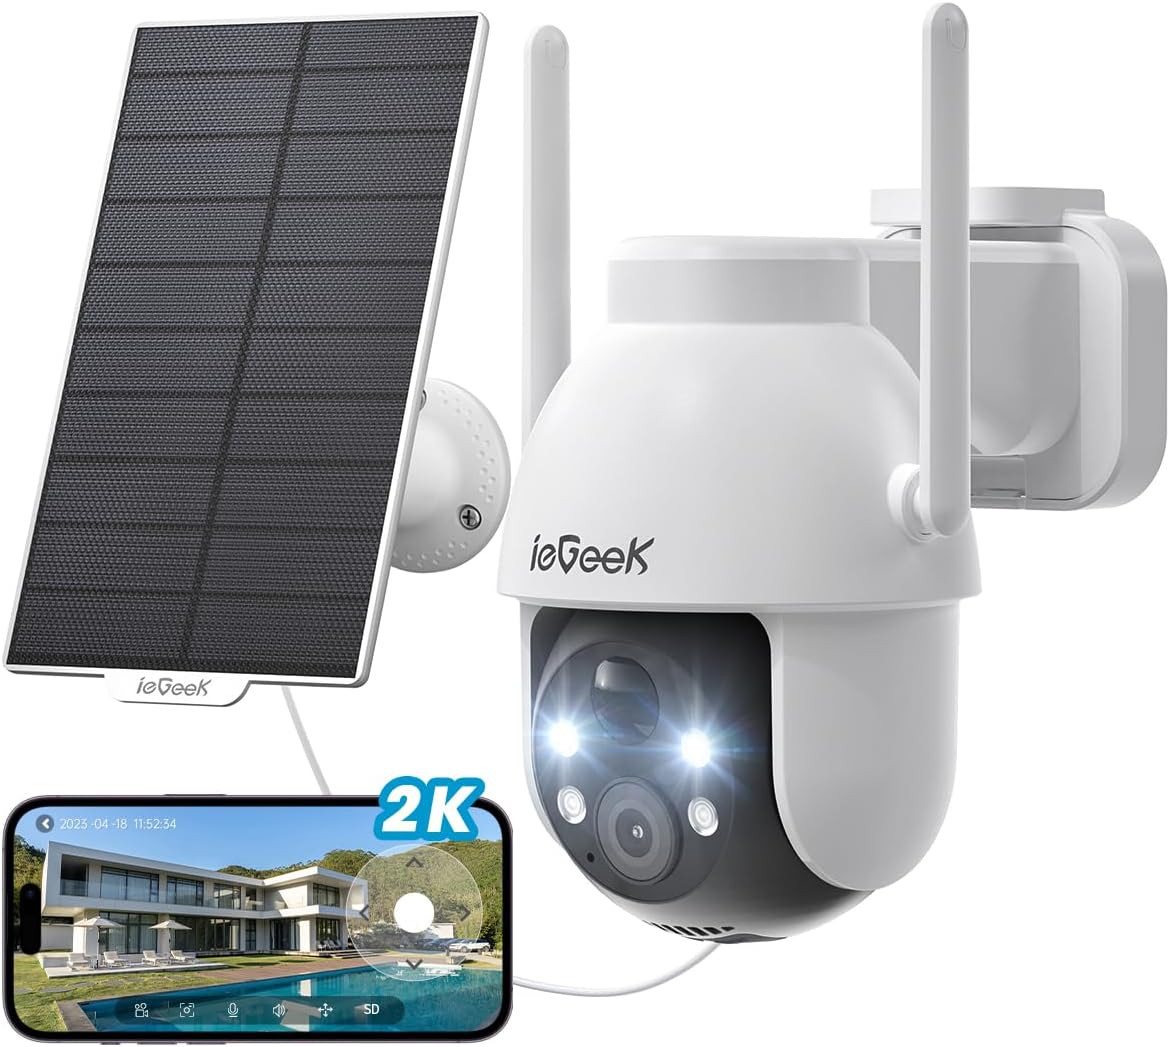 ieGeek 2K 3MP HD Überwachungskamera Aussen Solar 360° PTZ 2.4GHz WLAN Überwachungskamera (Aussen, Außenbereich, 360° PTZ Überwachungskamera Aussen Akku,Farb-Nachtsicht, 1-tlg., mit PIR Bewegungsmelder,2-Wege-Audio, Cloud/SD Storage, IP65, unterstützt 24/7-Aufnahme, 4 Facher Zoom) von ieGeek